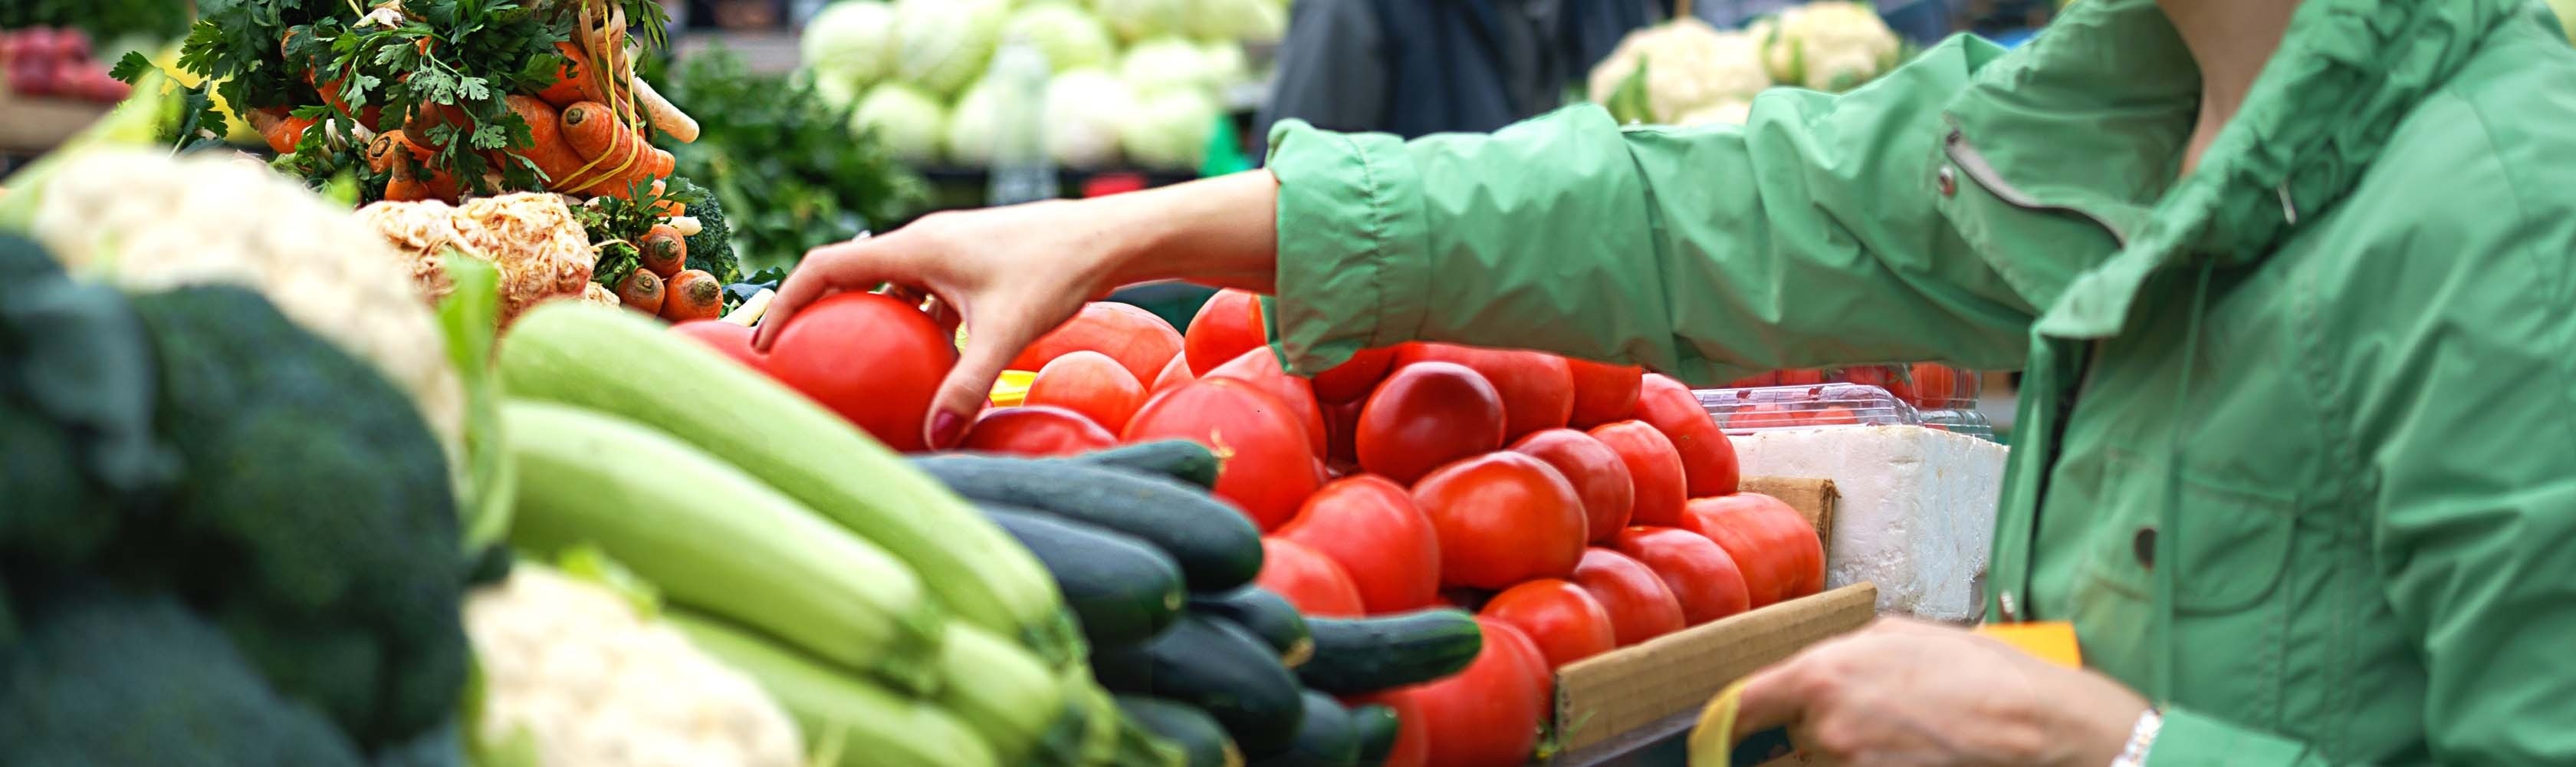 Comprare la verdura al mercato dei contadini: tutto naturale senza additivi.